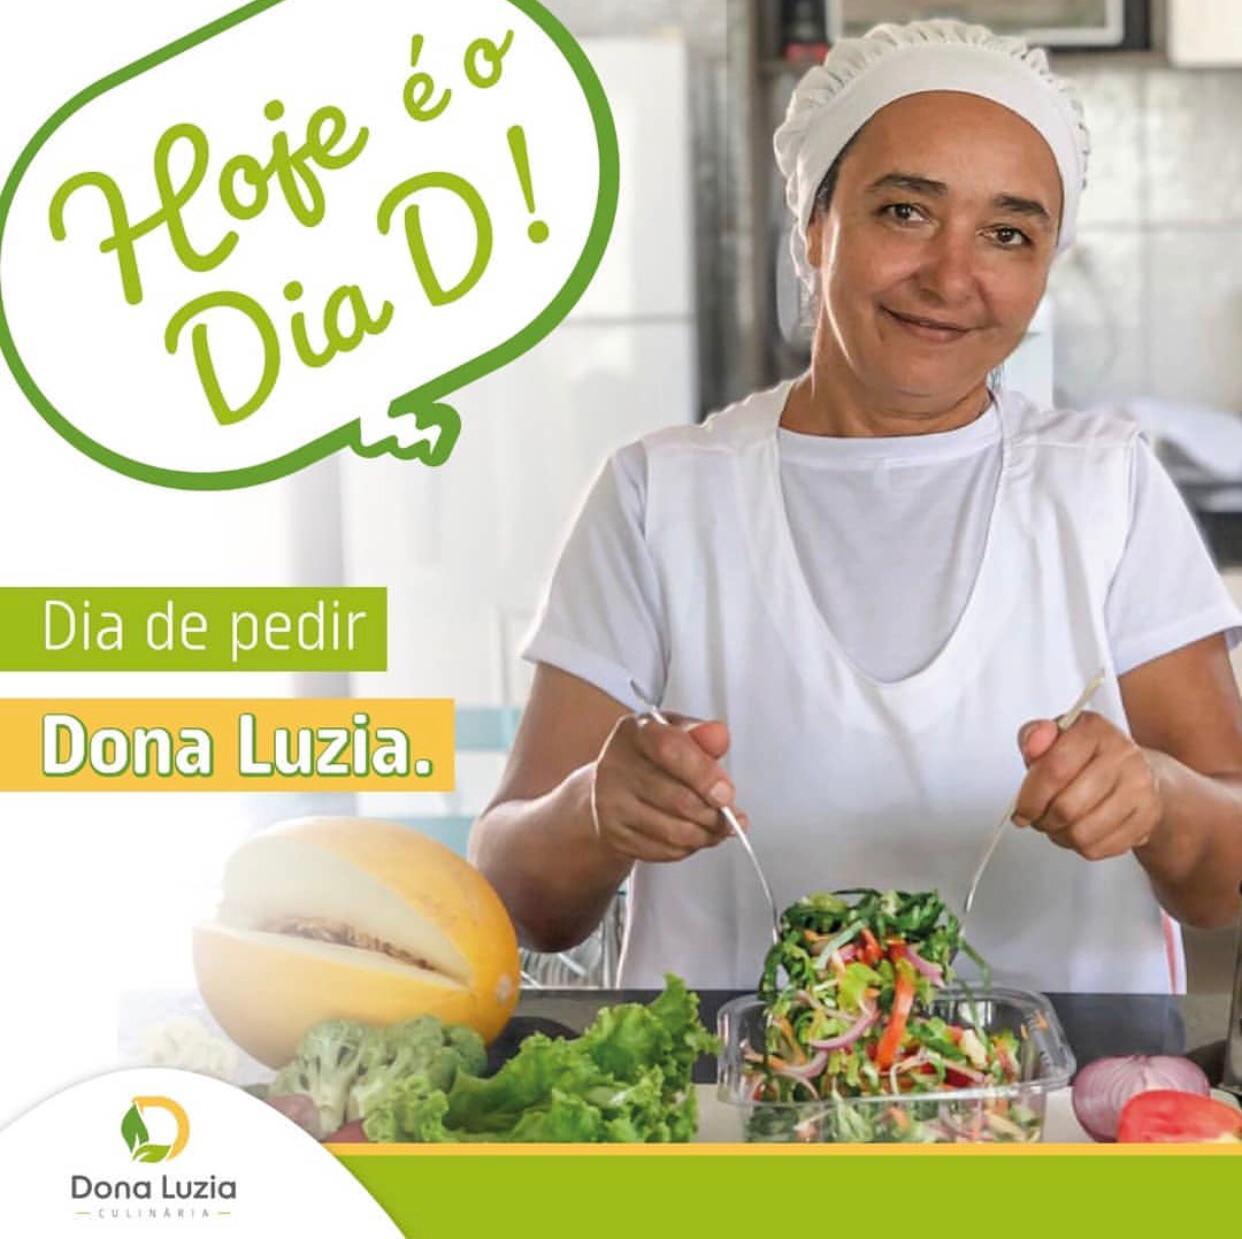 Dona Luzia Fitness Delivery chega em Picos  no segmento de comida Fit saudável